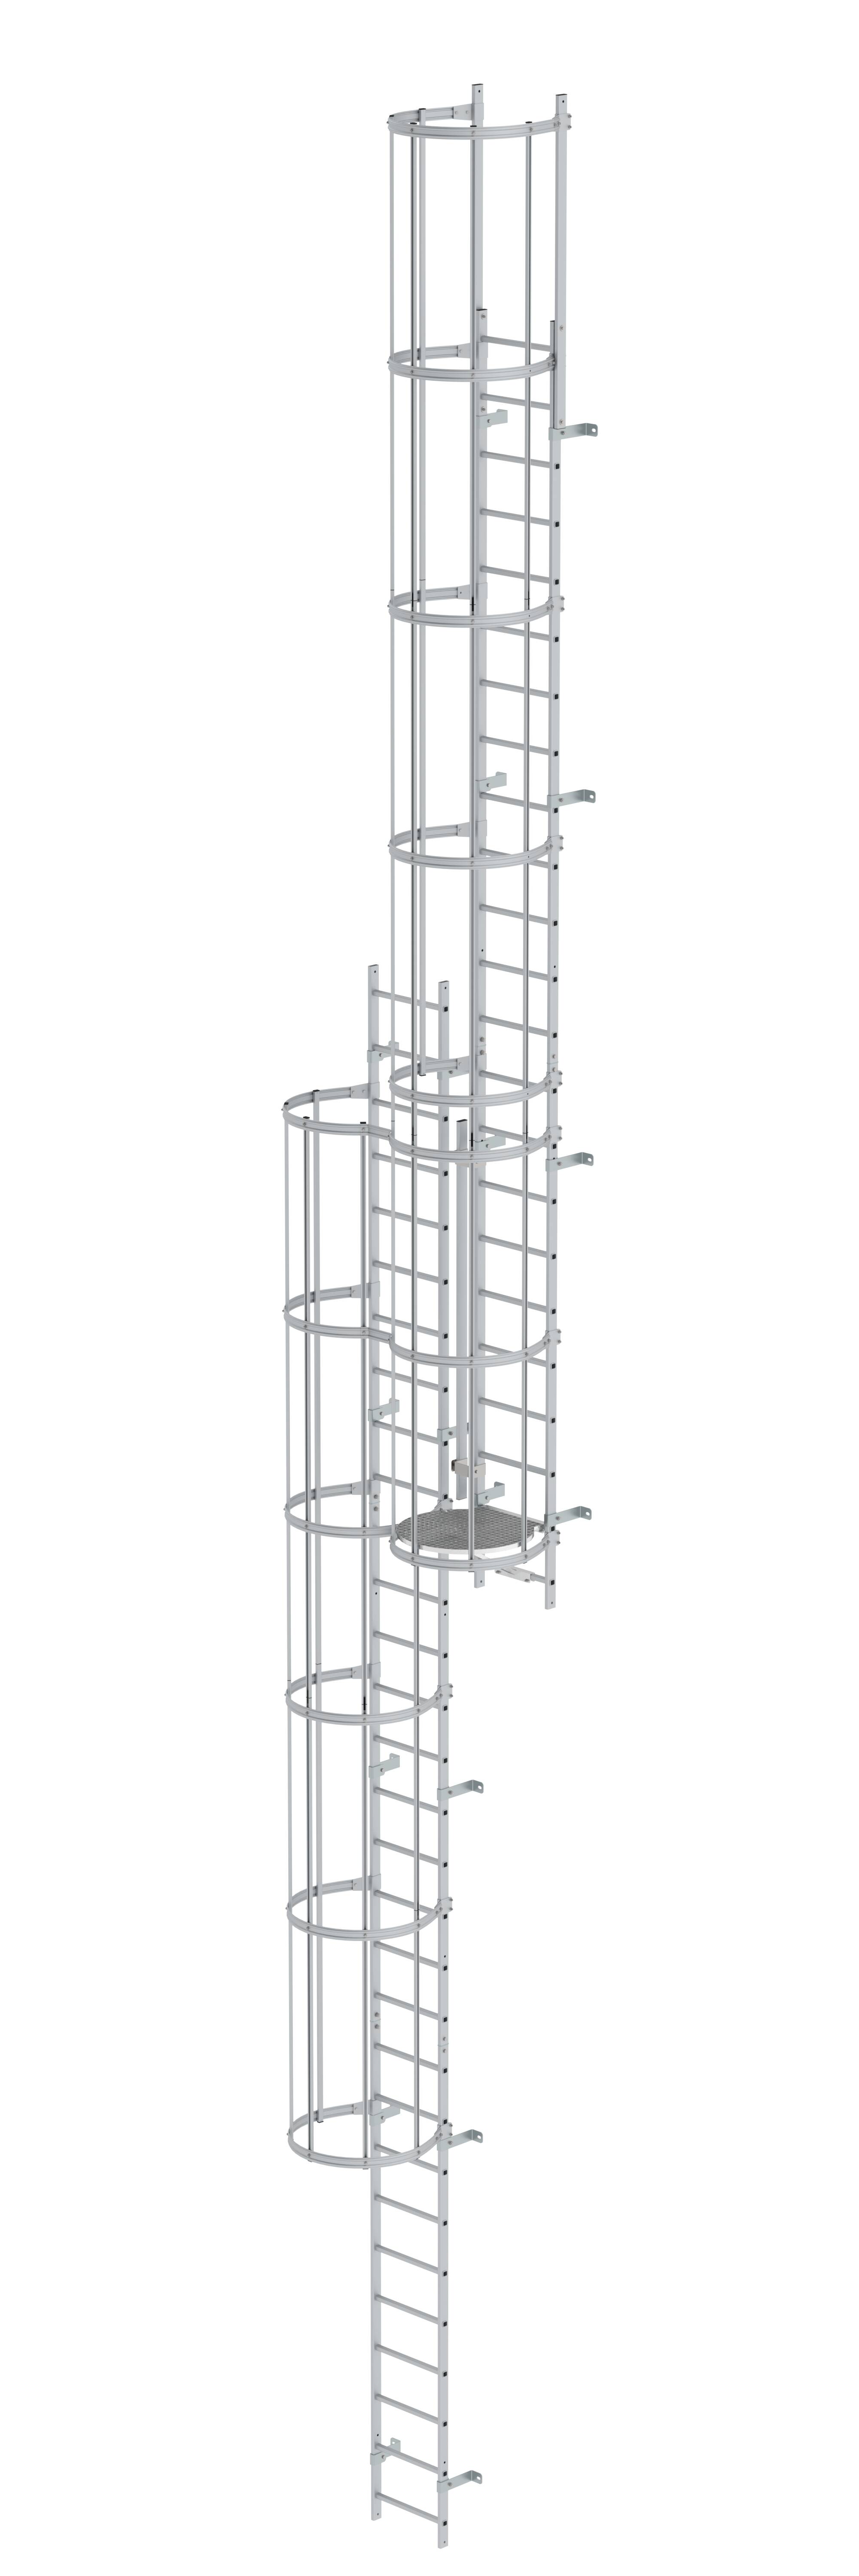 Mehrzügige Steigleiter mit Rückenschutz (Maschinen) Aluminium eloxiert 12,96m